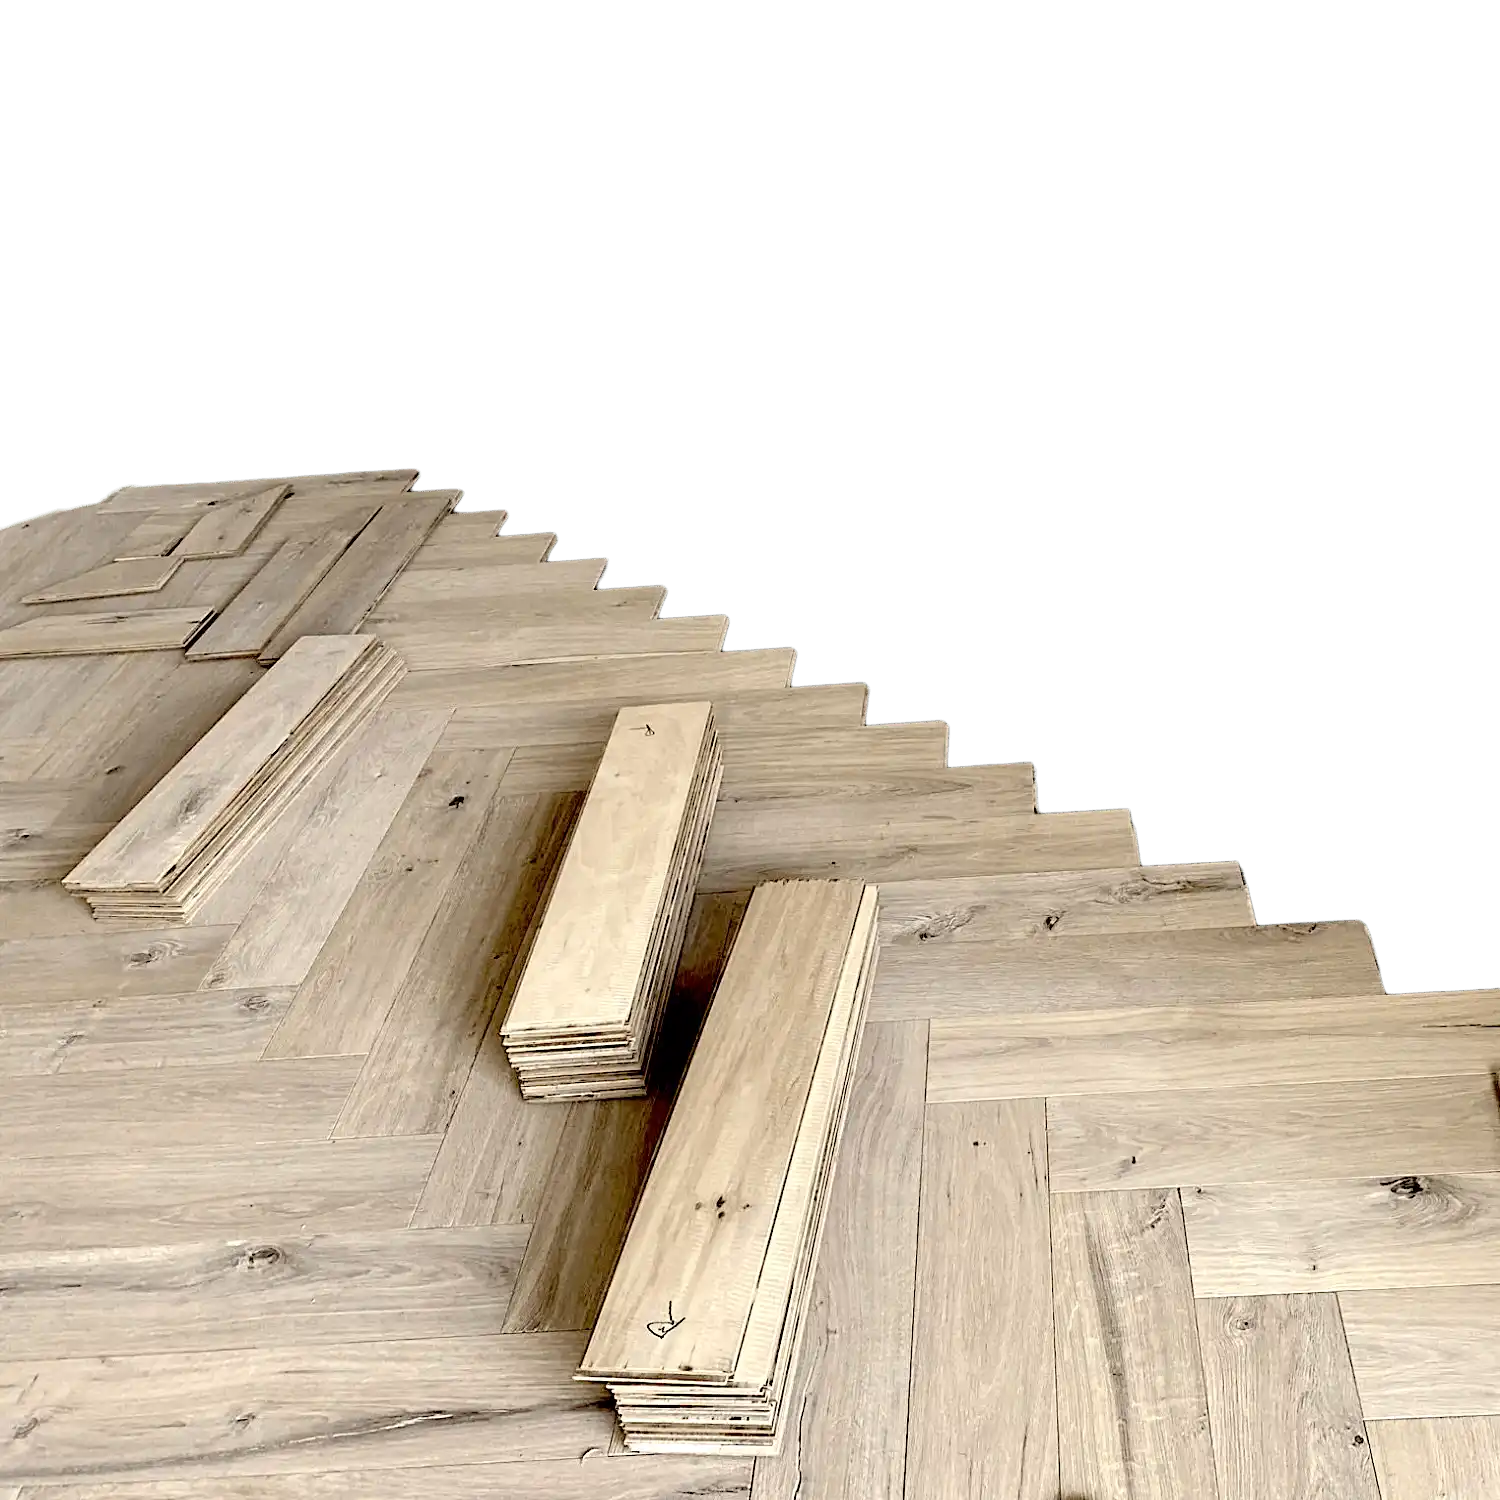  Des piles de planches de bois de couleur marron clair, rappelant le parquet vieilli, sont disposées sur un sol à chevrons partiellement réalisé. L'arrière-plan est un écran vert. 